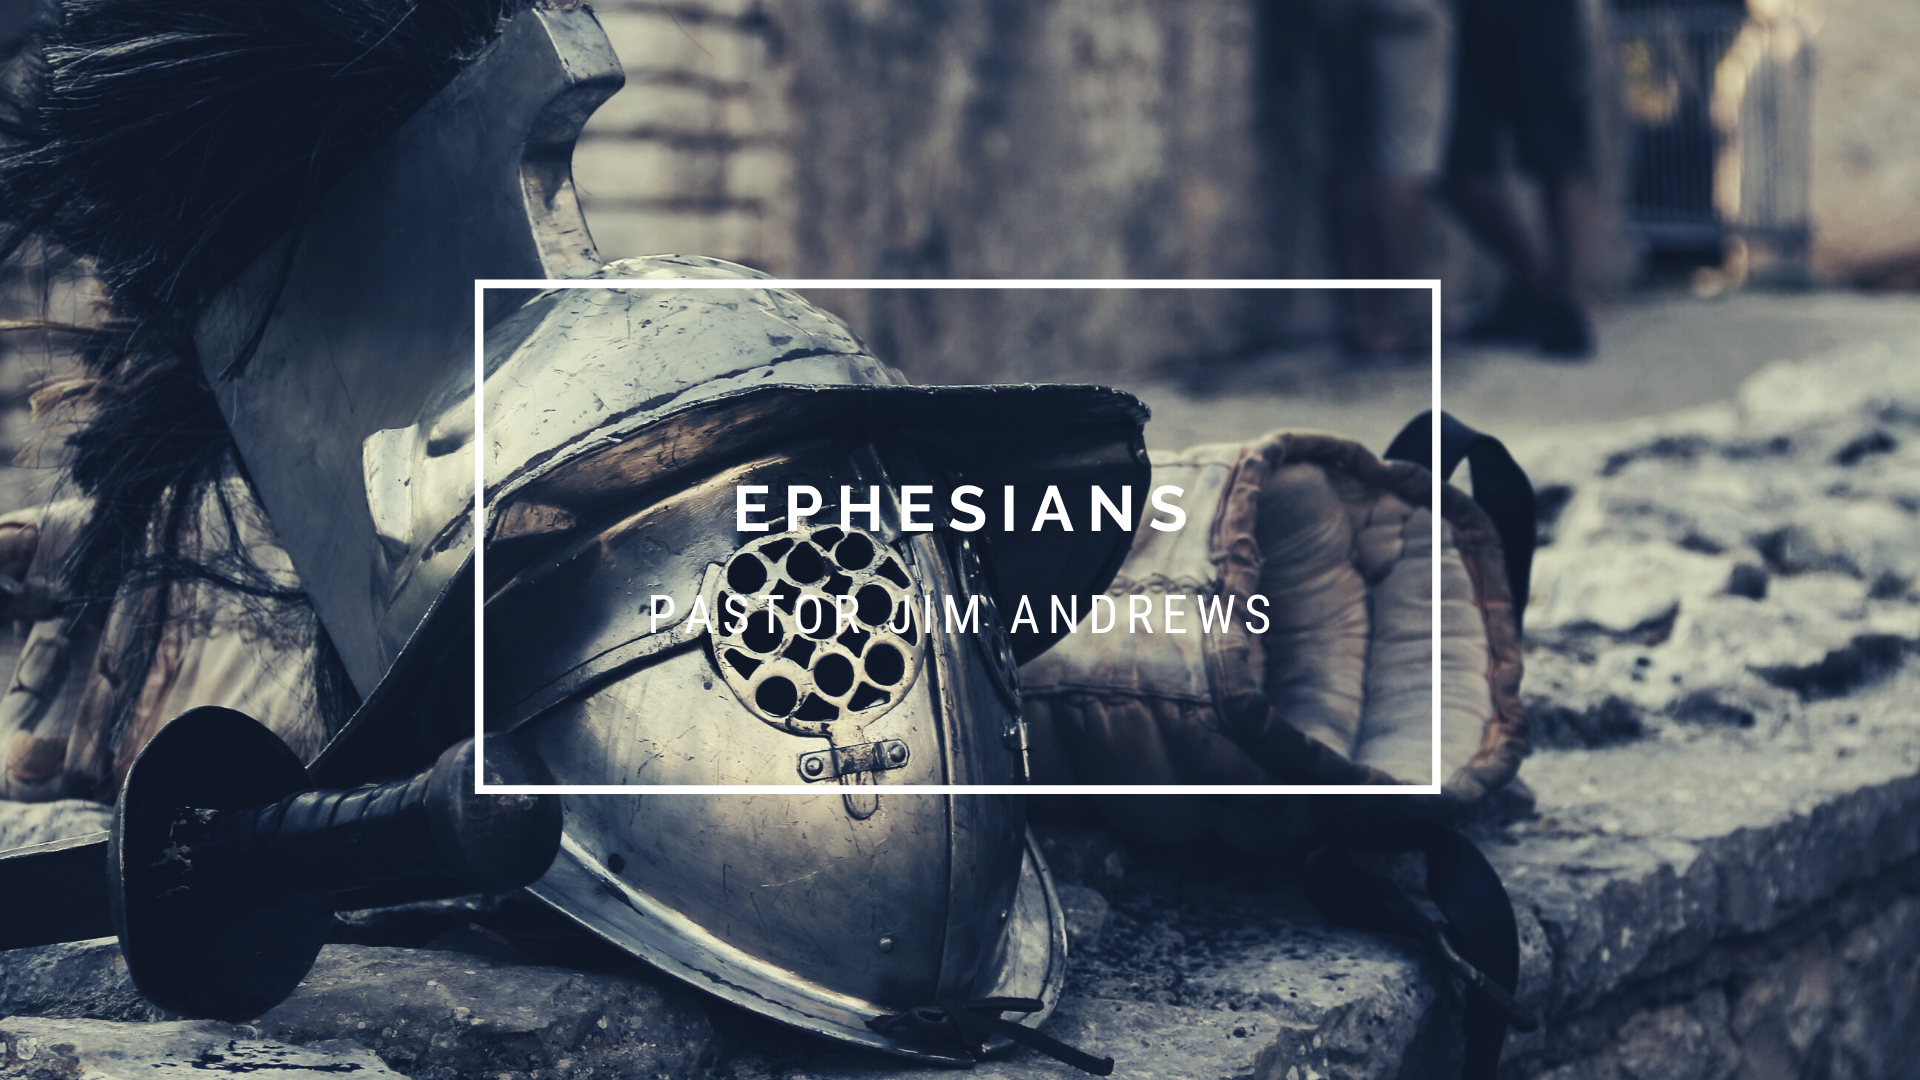 Ephesians 6:10-12